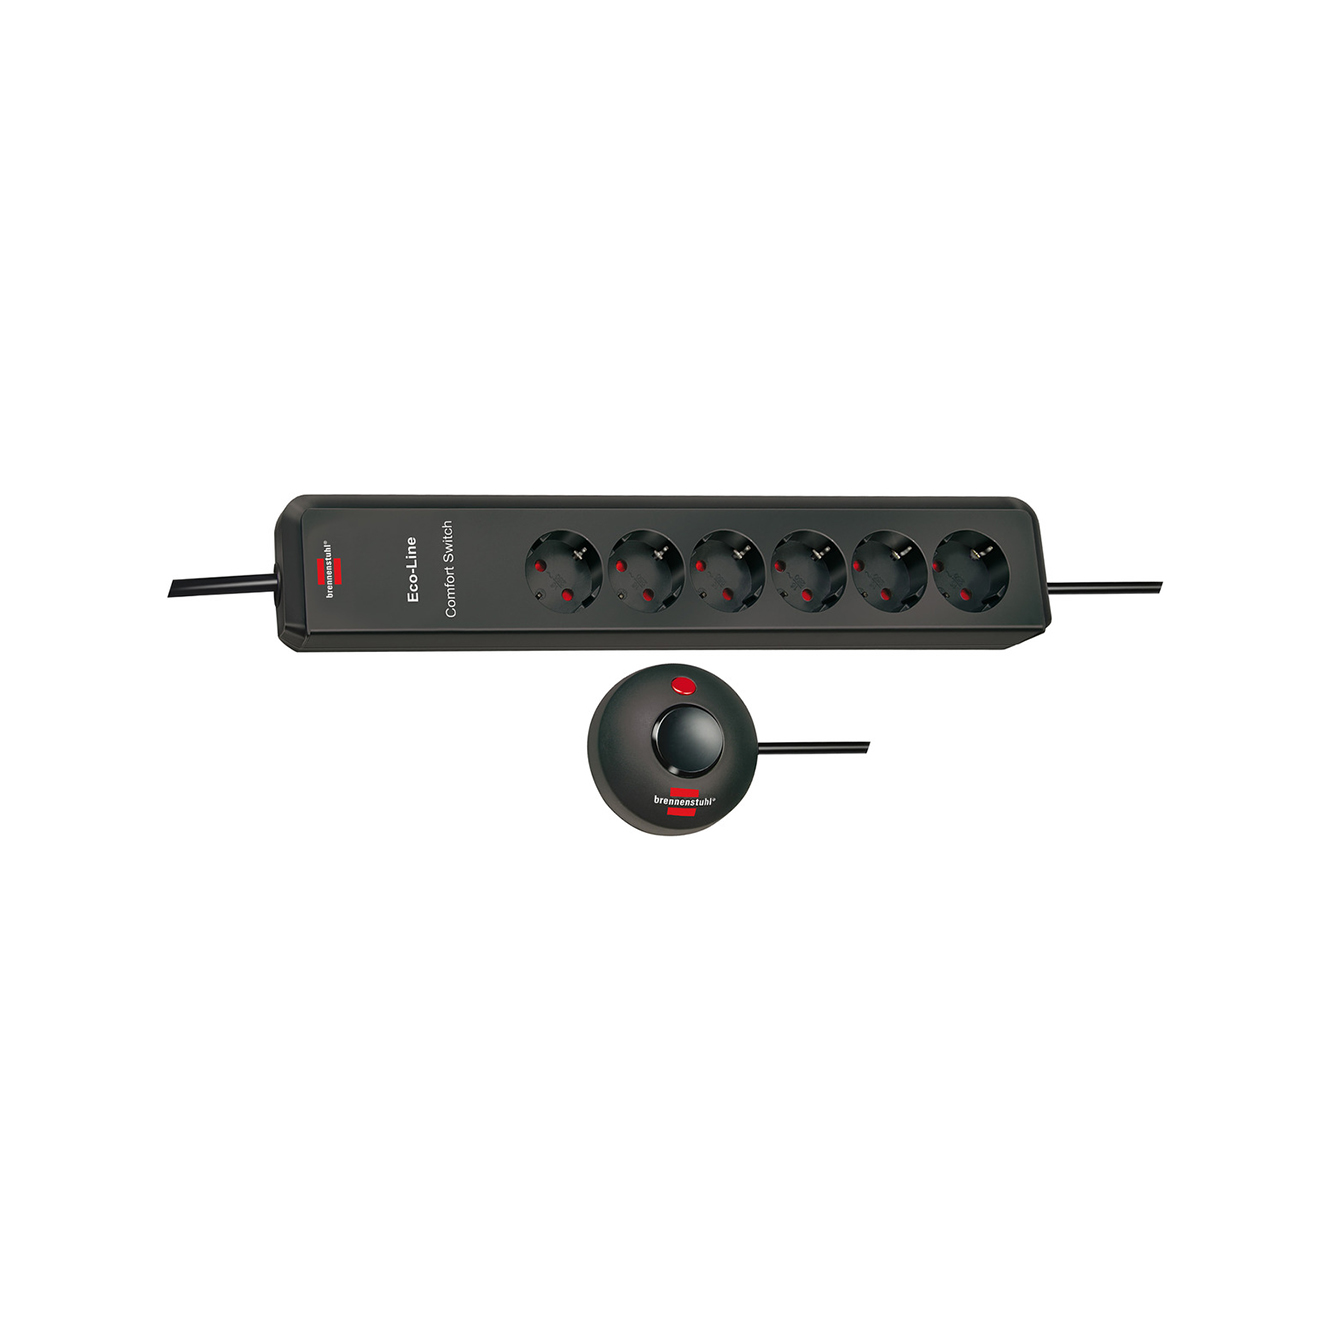 Удлинитель Brennenstuhl Eco-Line Comfort с выносной кнопкой, 6 розеток кабель 2 м H05VV-F 3G1,5 1159450616